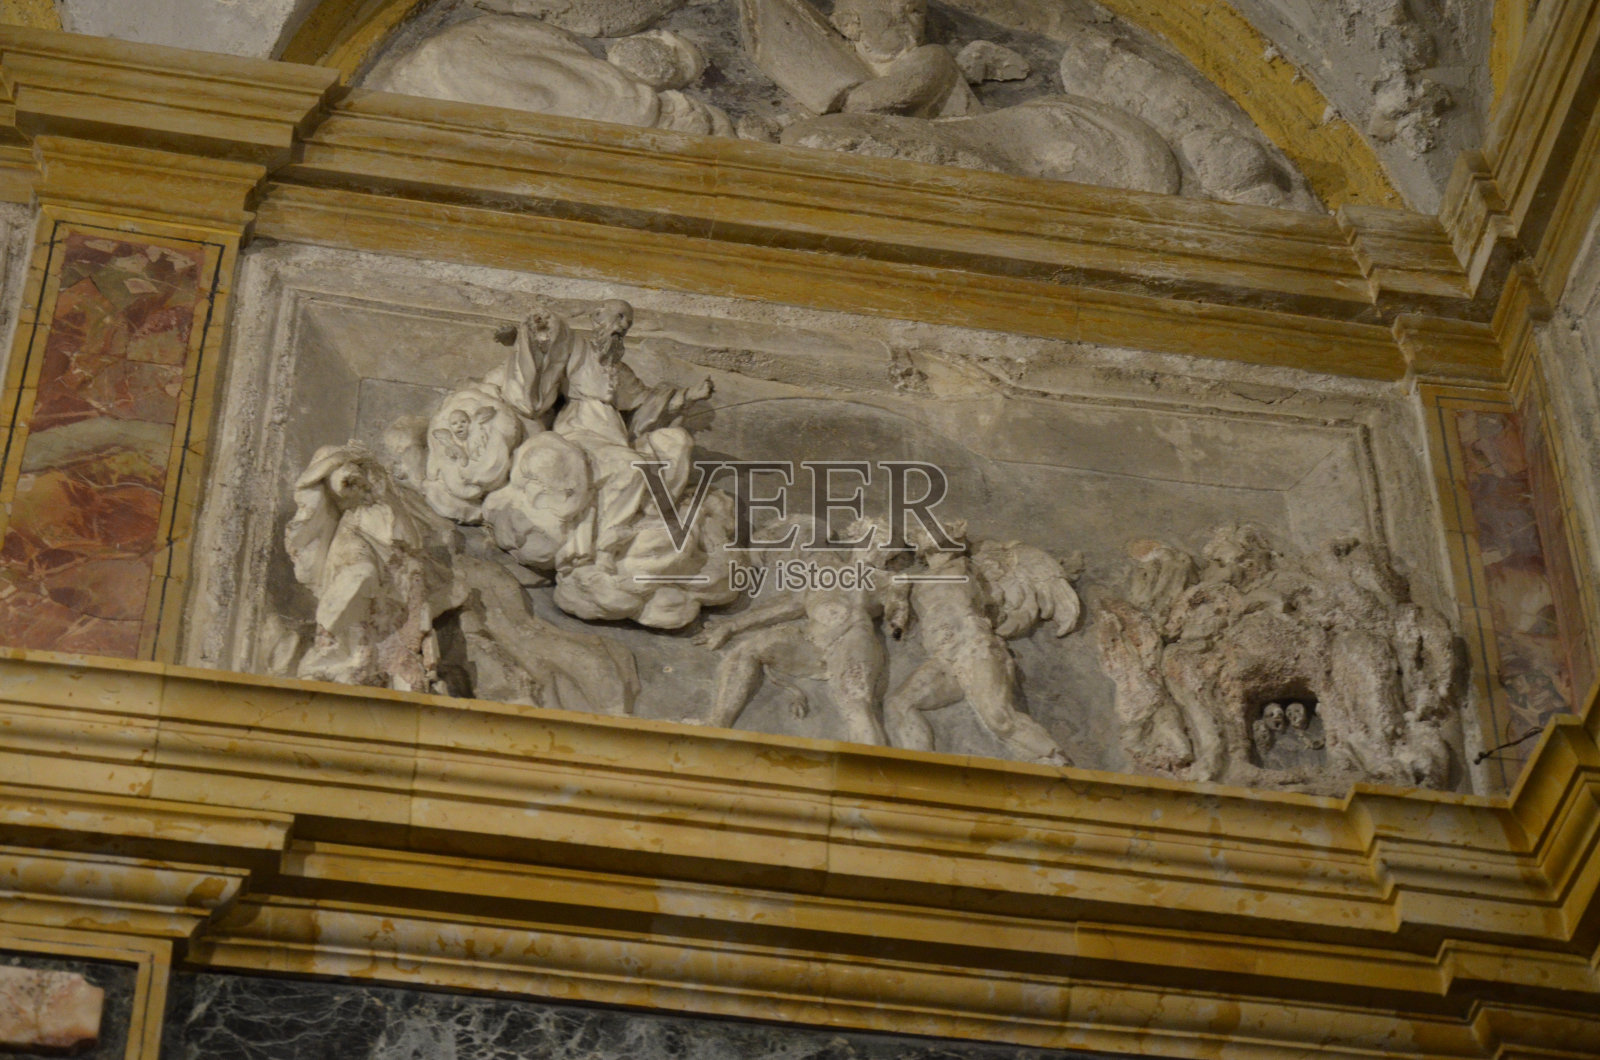 西西里岛Monreale大教堂内部照片摄影图片